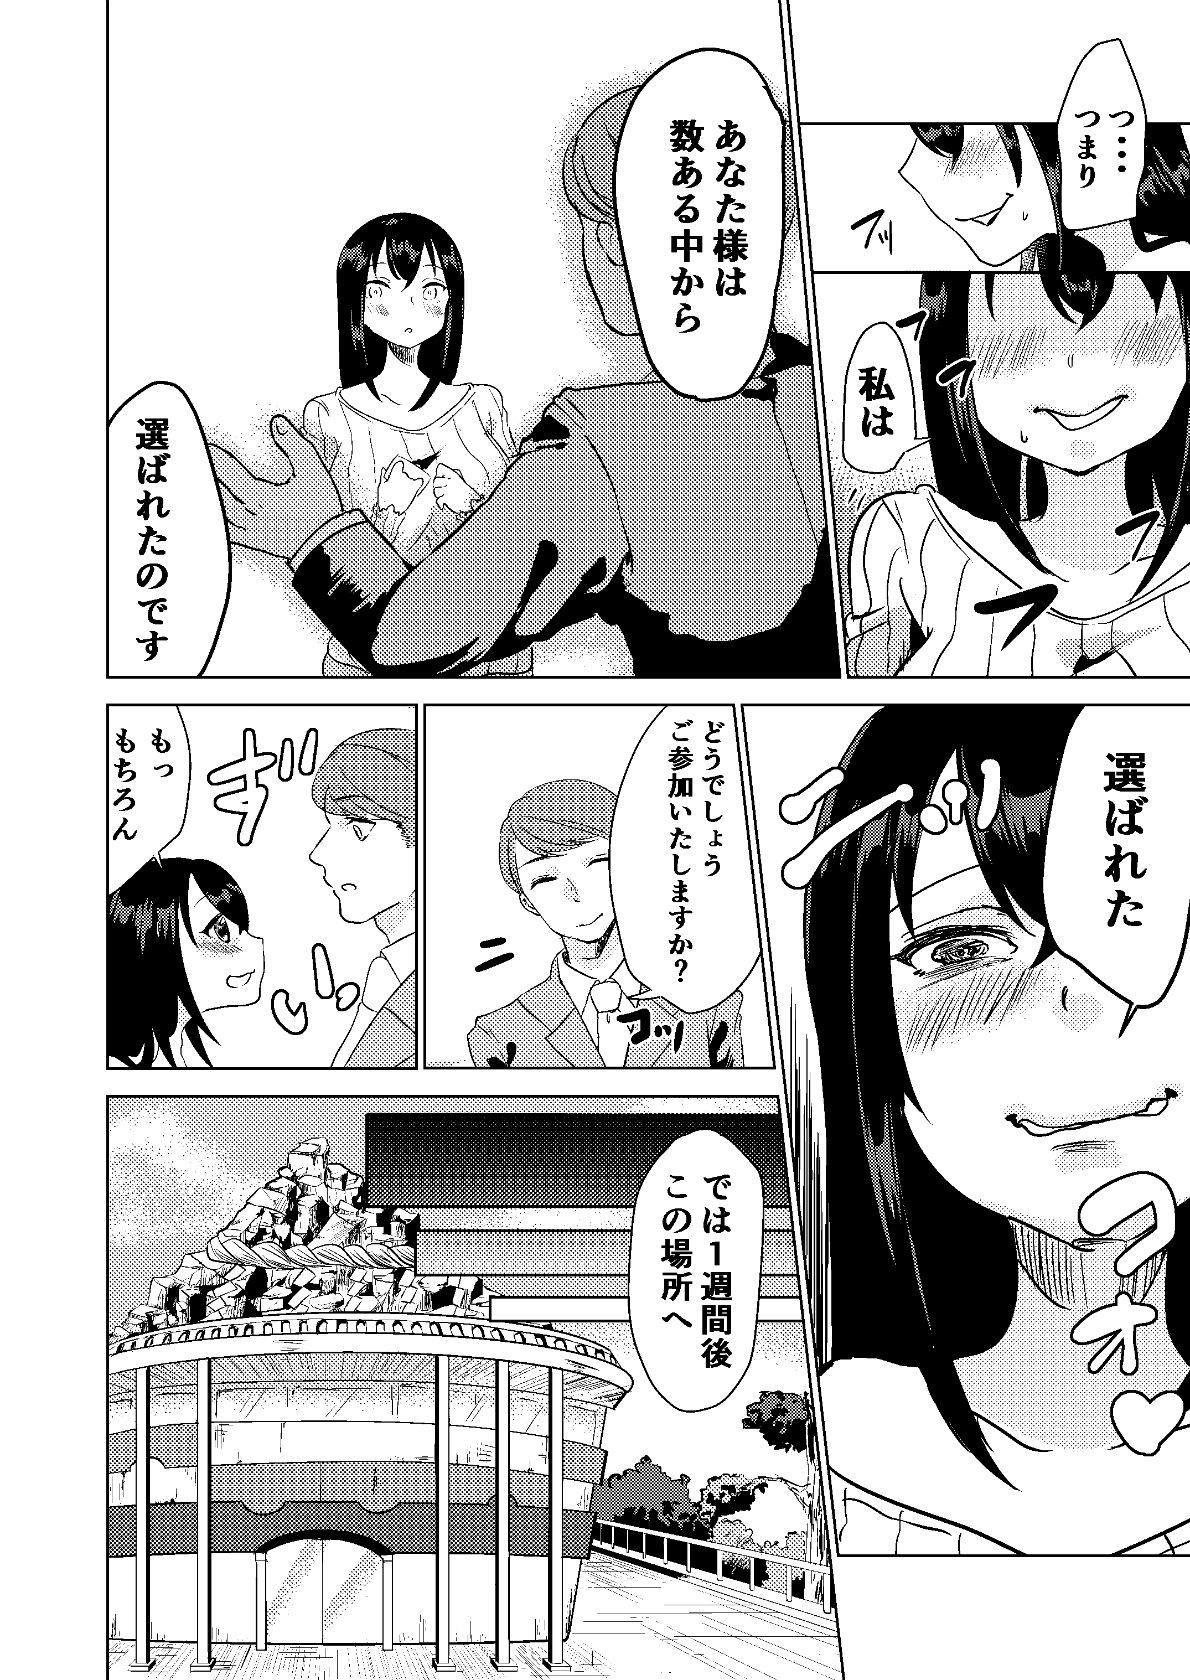 Reverse Kyou kara Watashi wa Anata ni Naru. - Original T Girl - Page 6